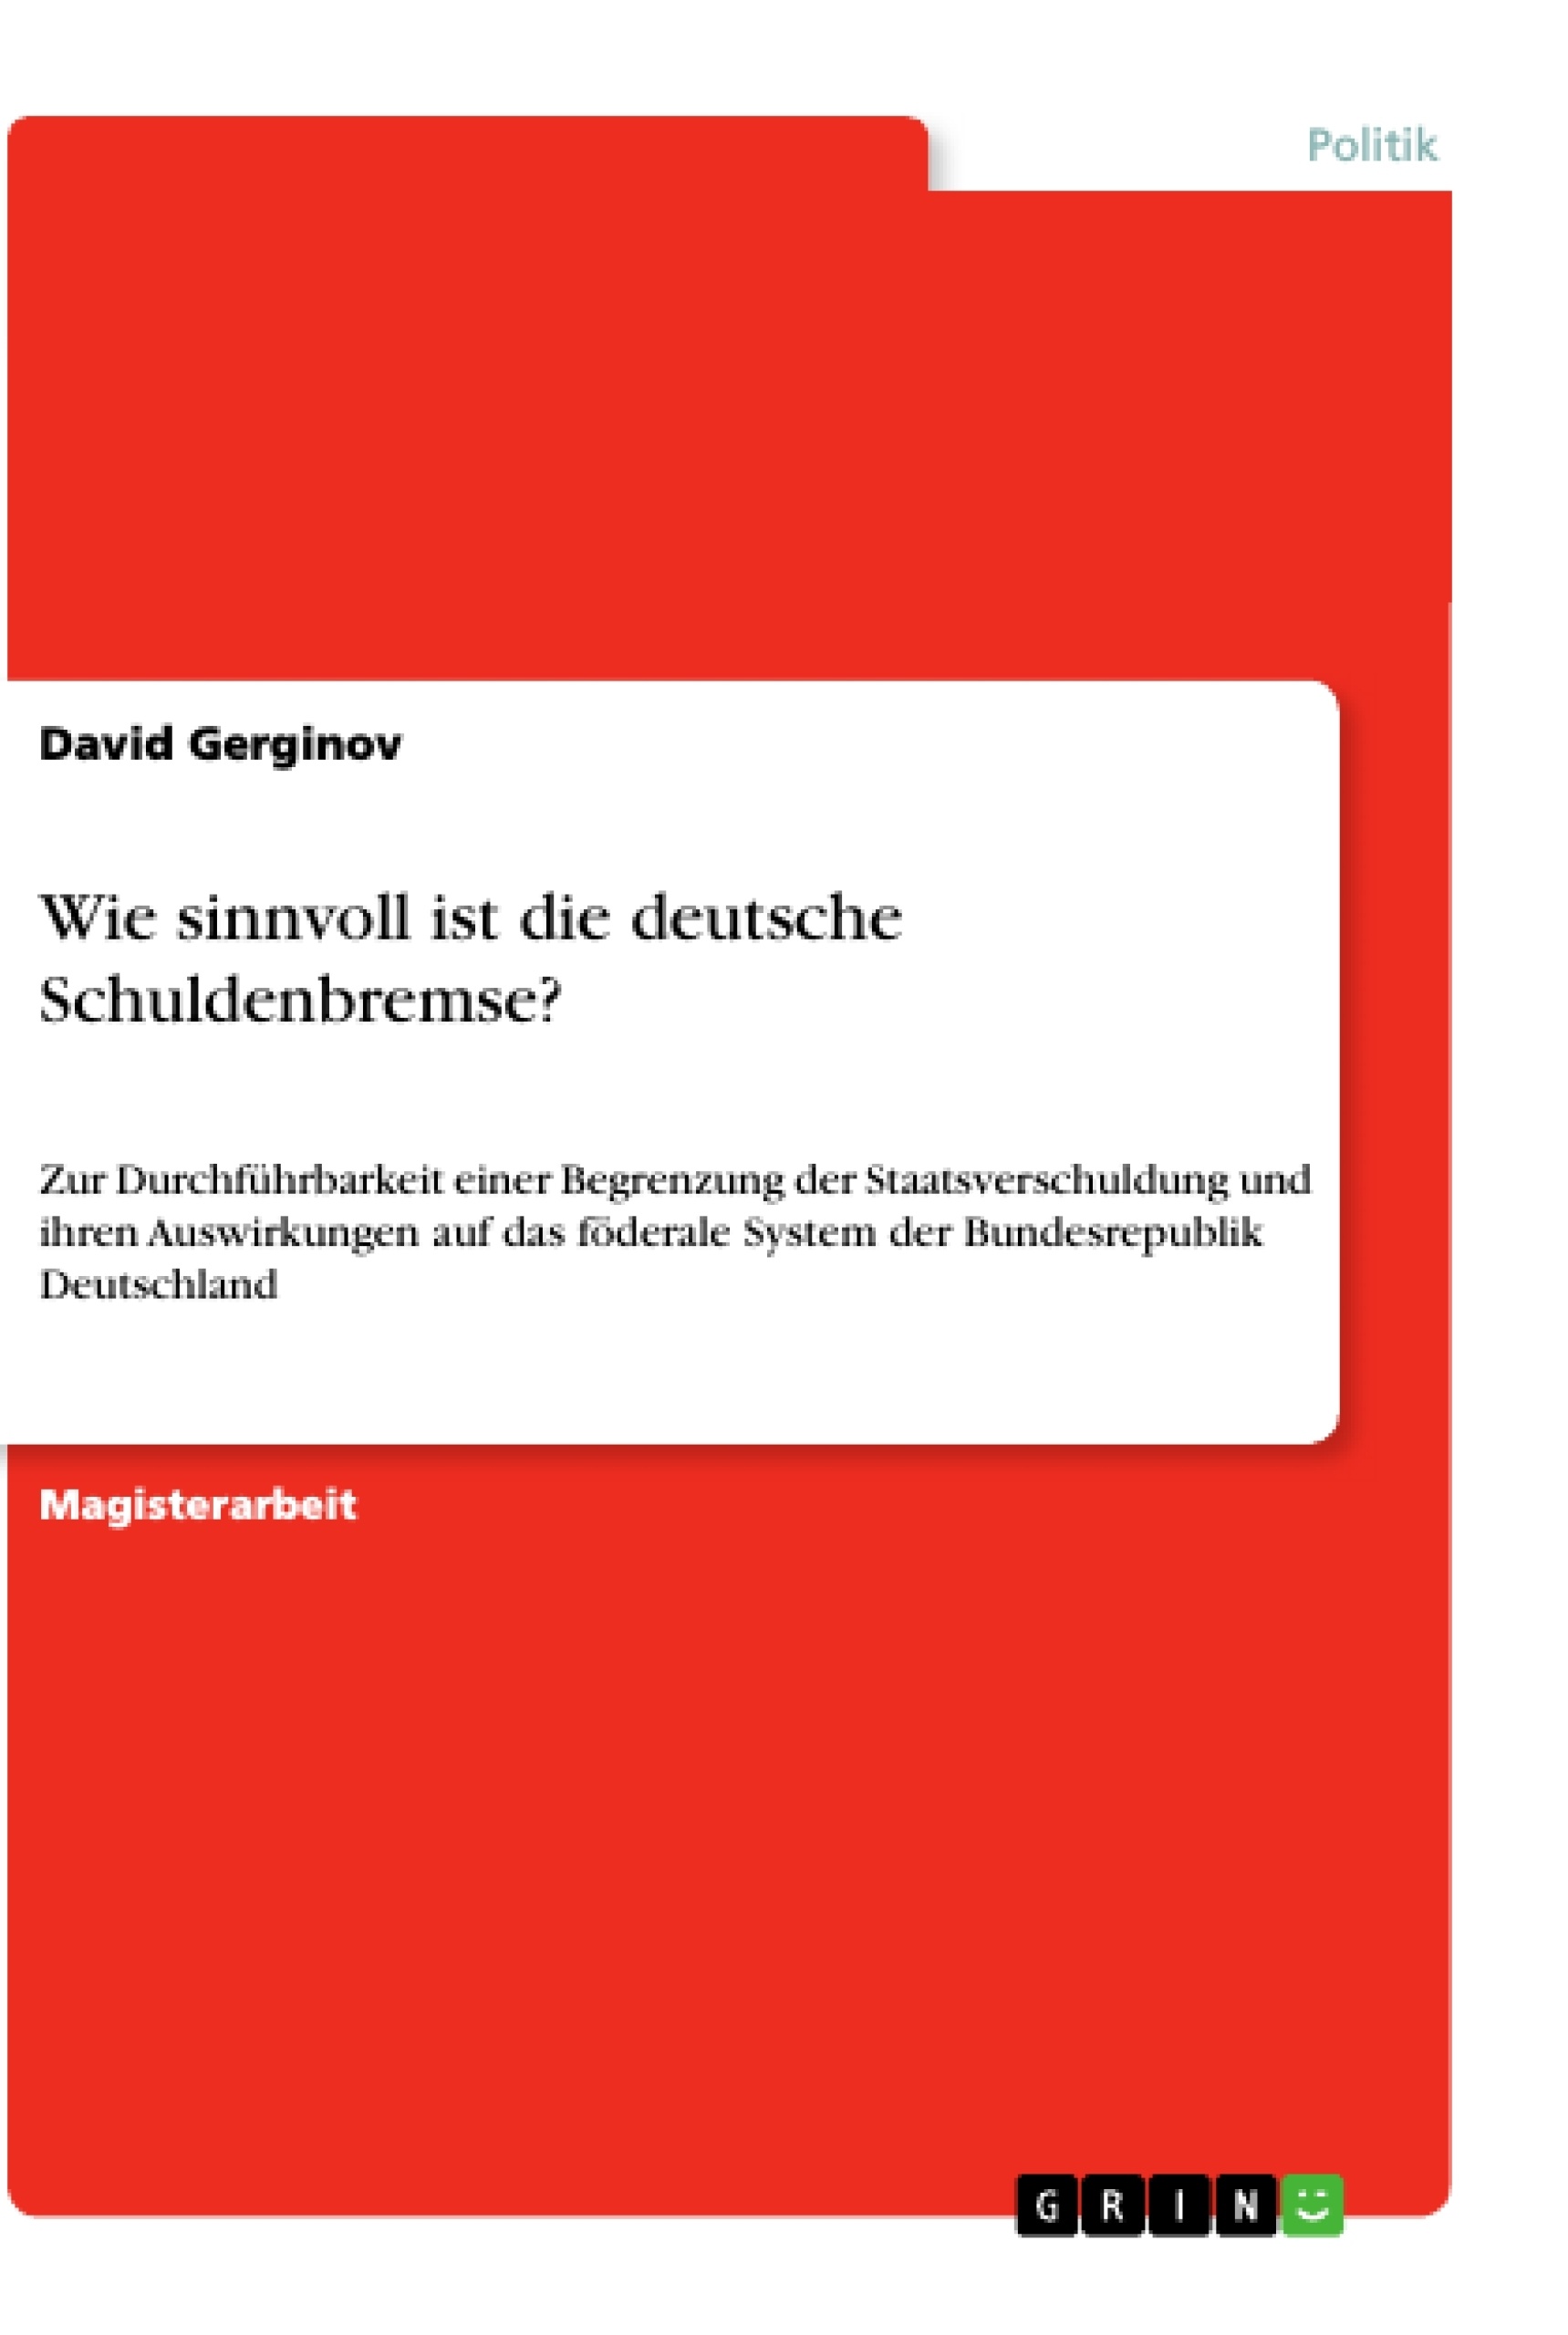 Title: Wie sinnvoll ist die deutsche Schuldenbremse?